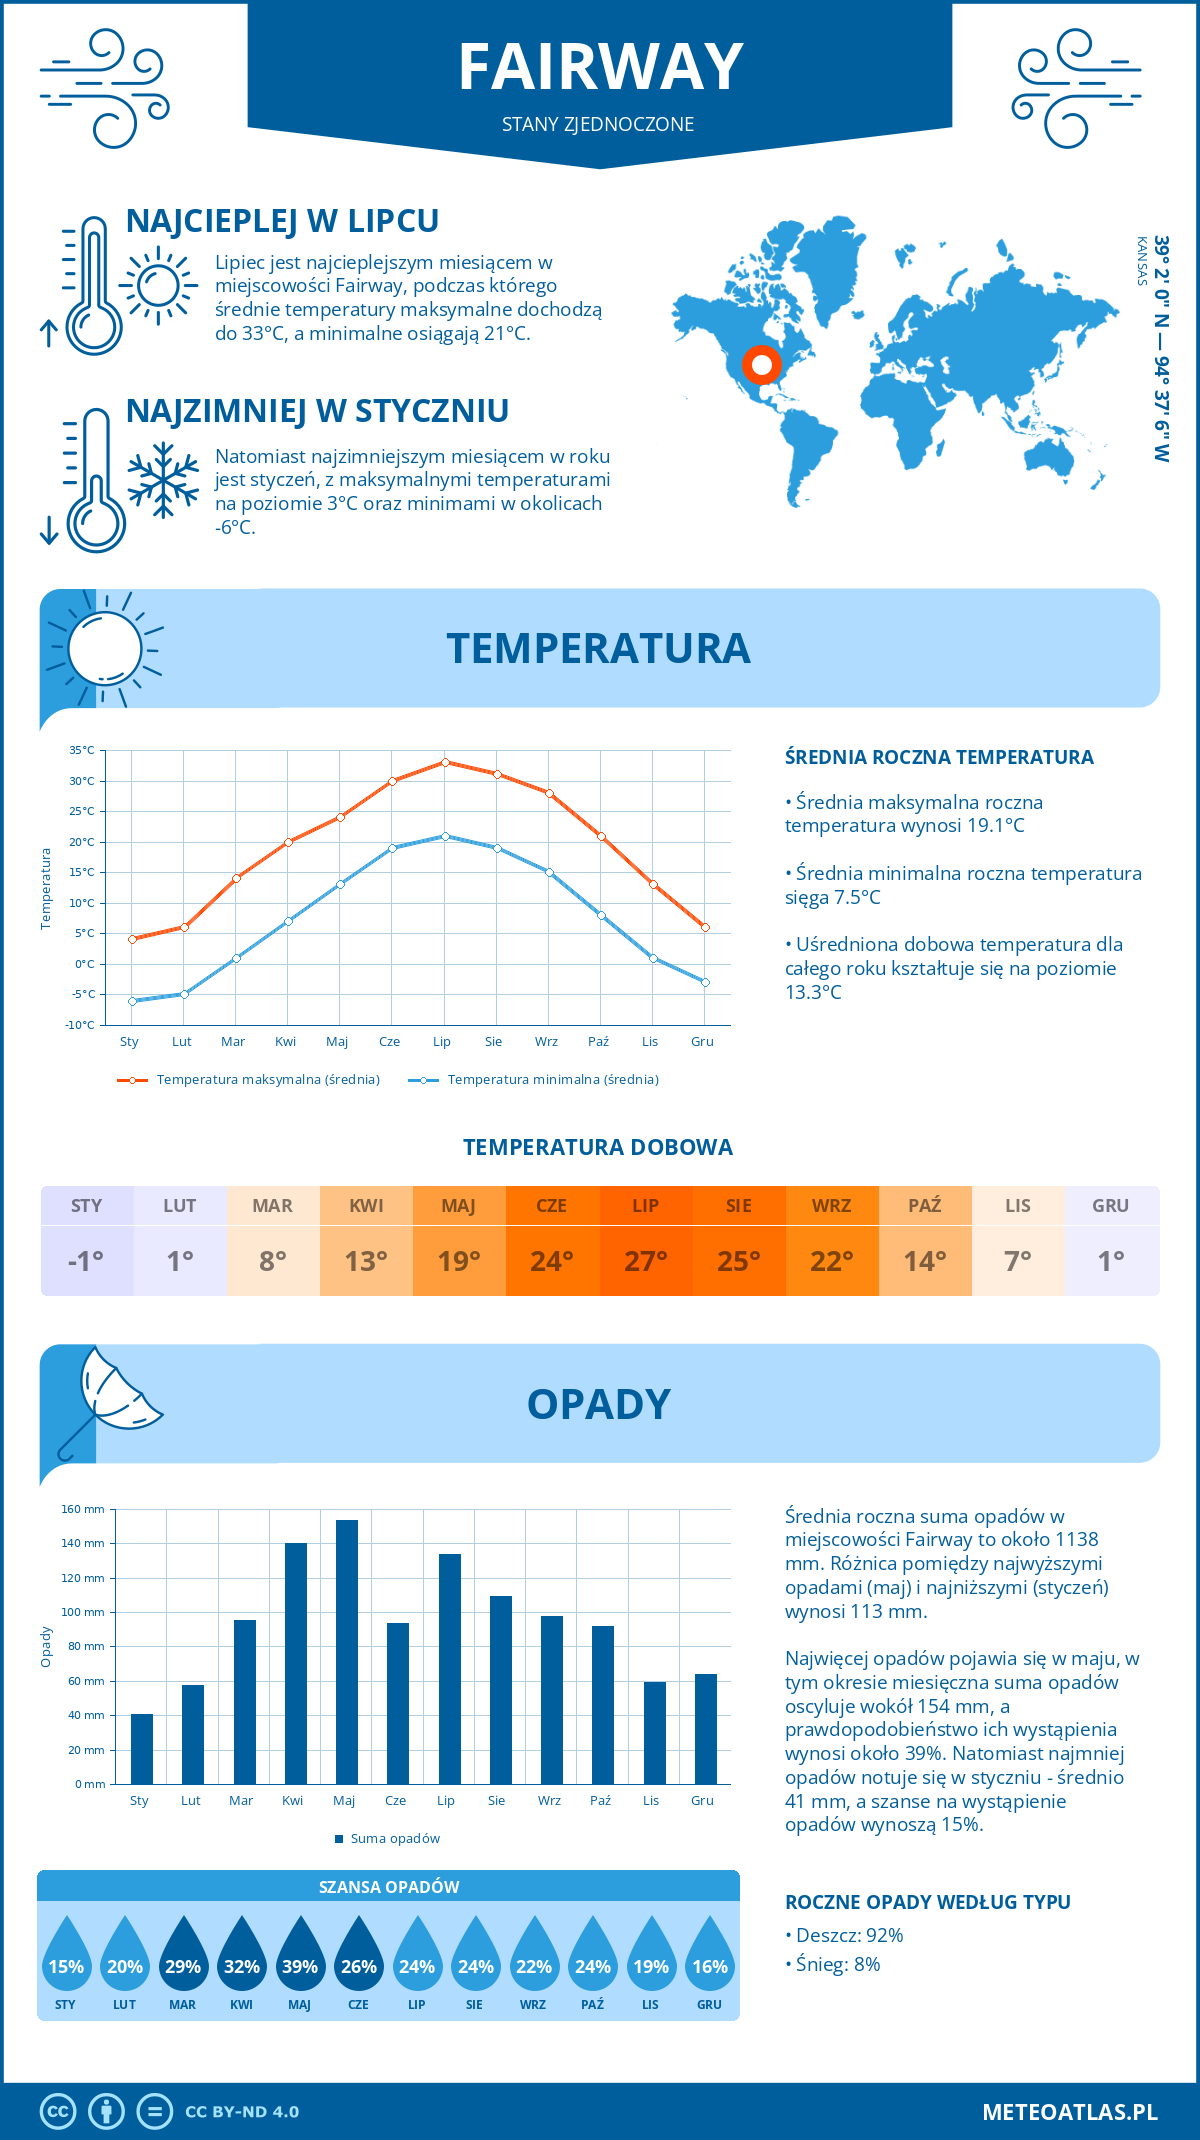 Pogoda Fairway (Stany Zjednoczone). Temperatura oraz opady.